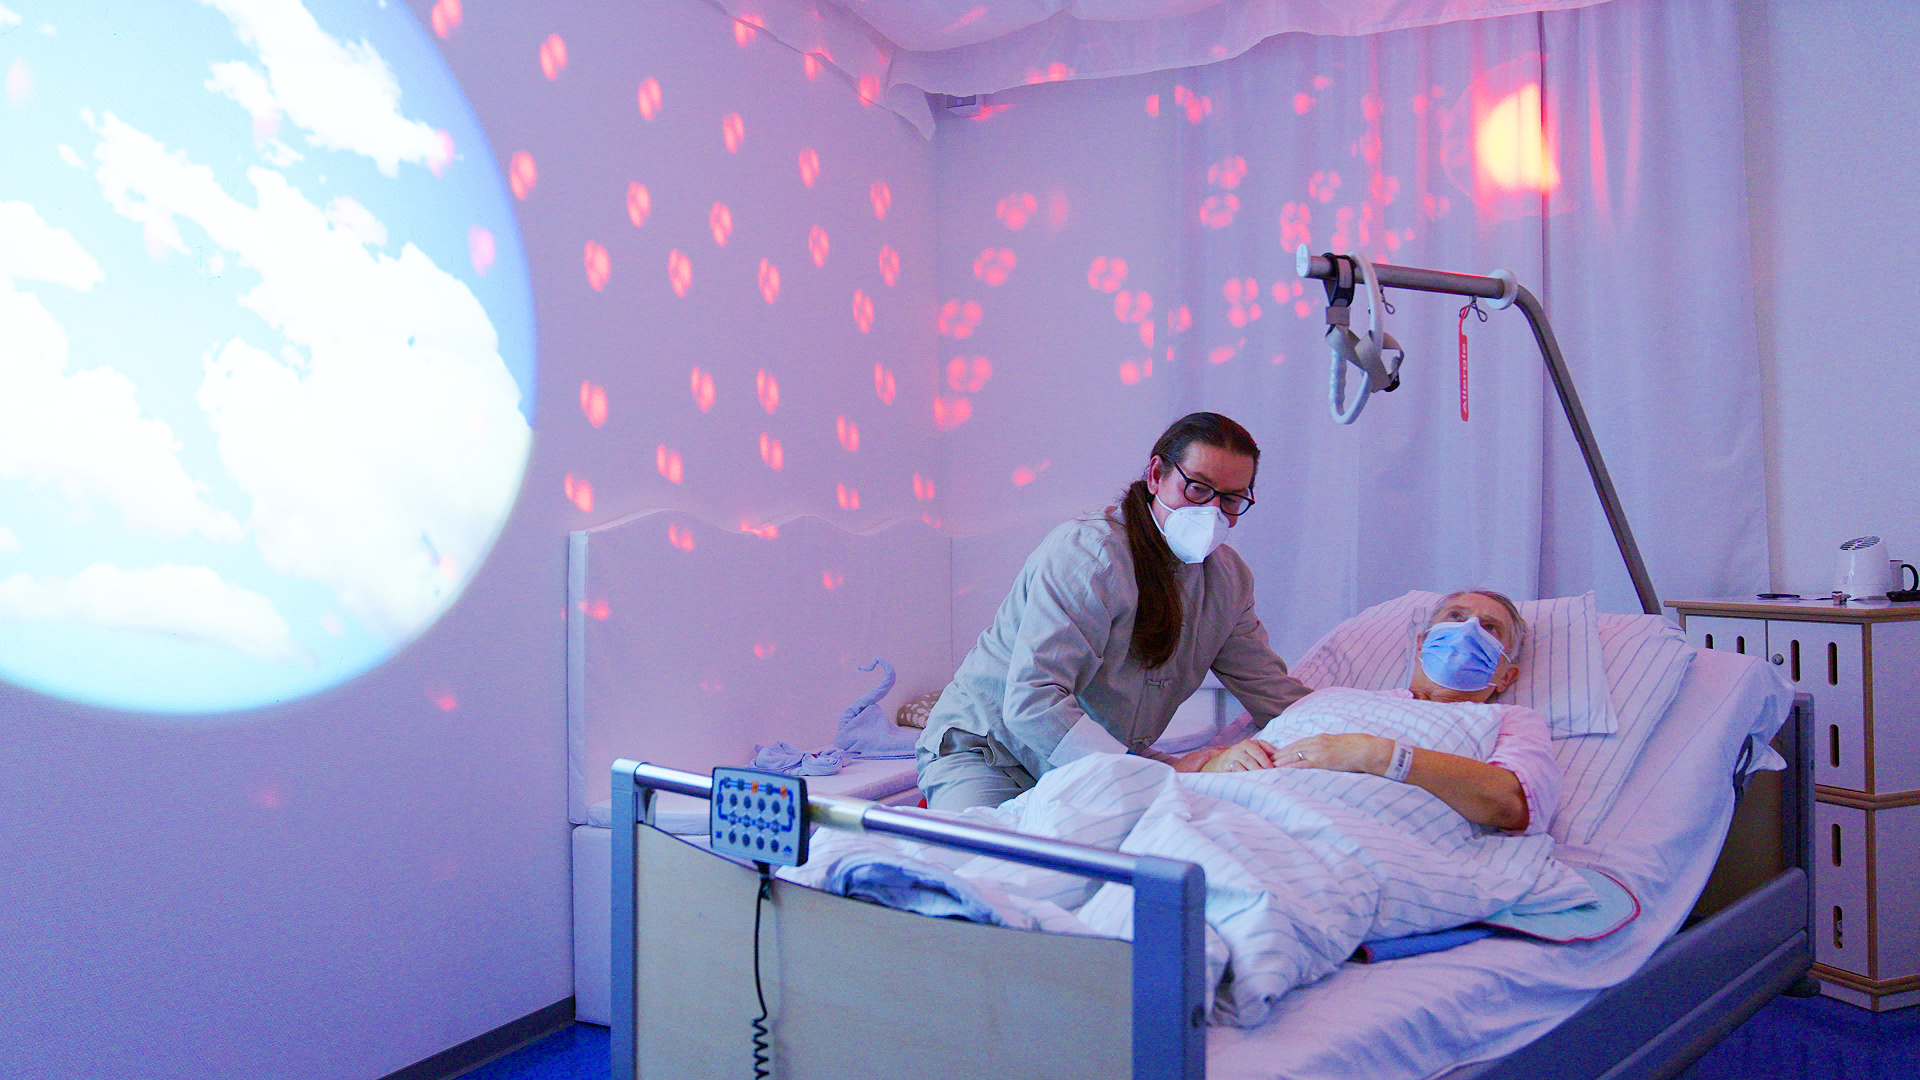 Der Snoozelraum des Sana Klinikums Offenbach wirkt beruhigend auf Patienten © ZDF/Ricardo Esteban Garzon Mesa